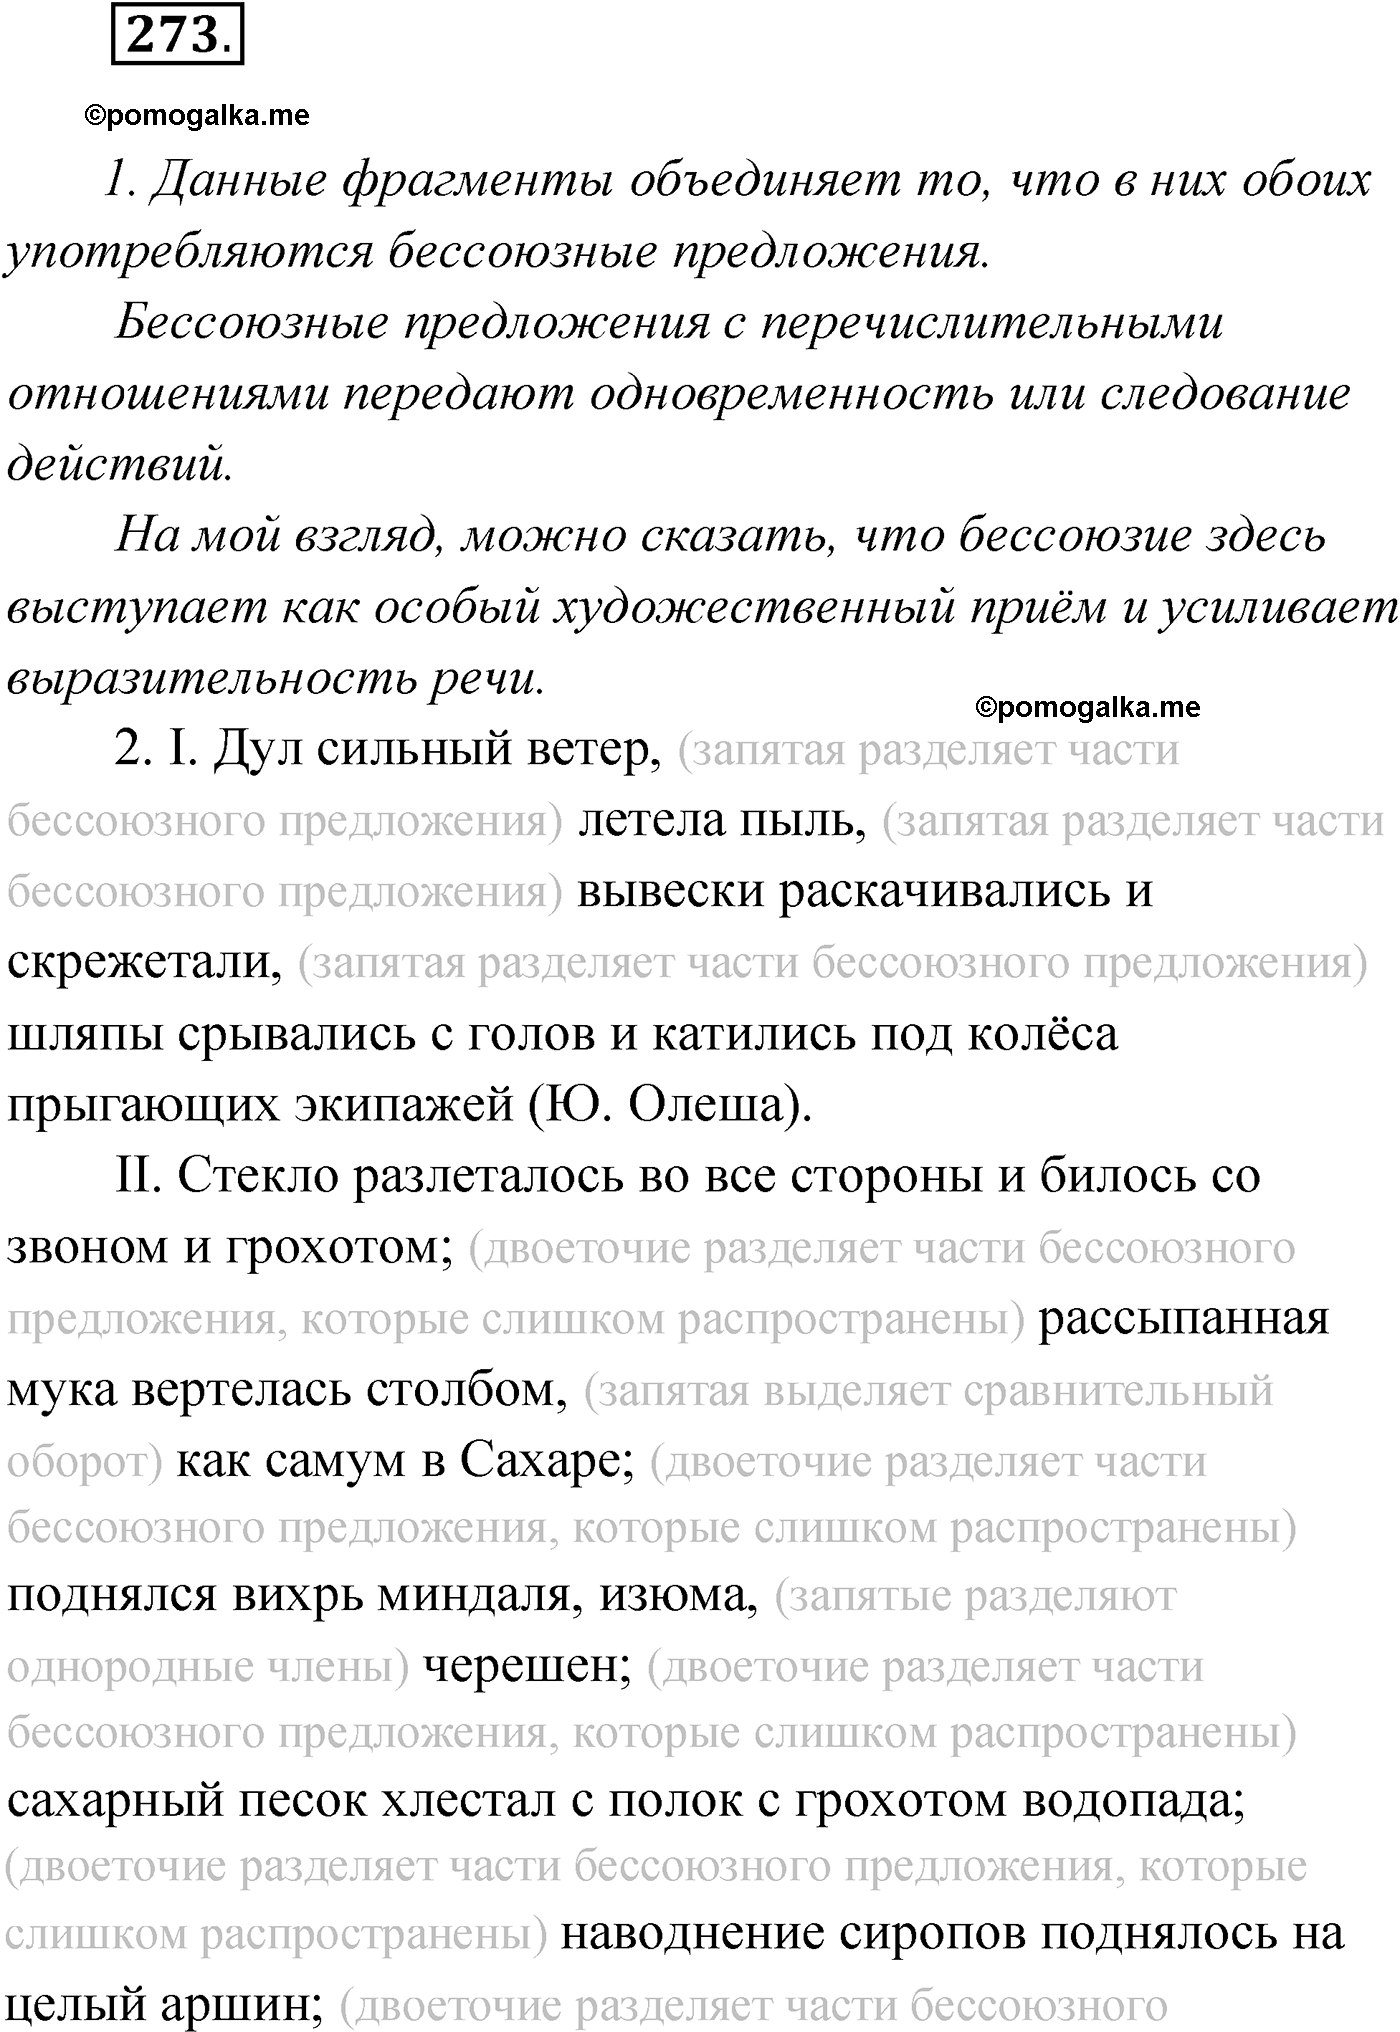 упражнение №273 русский язык 9 класс Мурина 2019 год